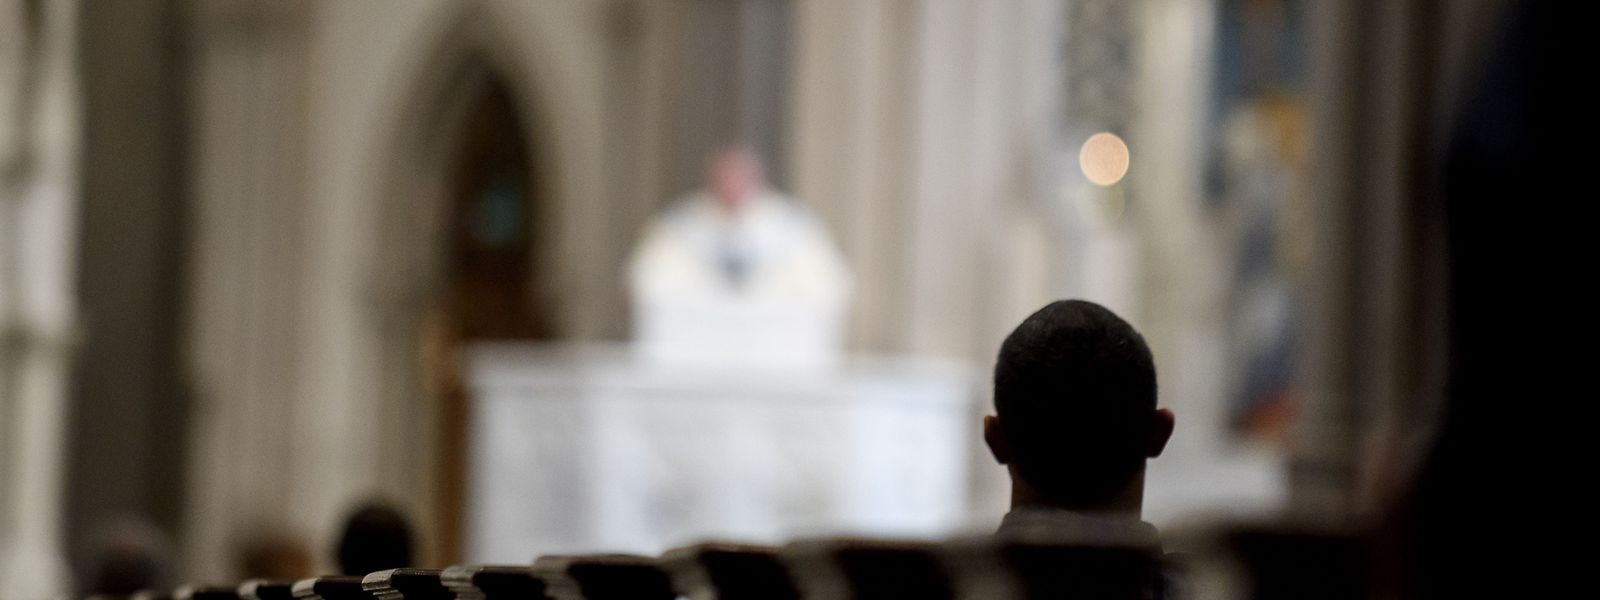 Die katholische Kirche der USA wird von heftigen Vorwürfen erschüttert.